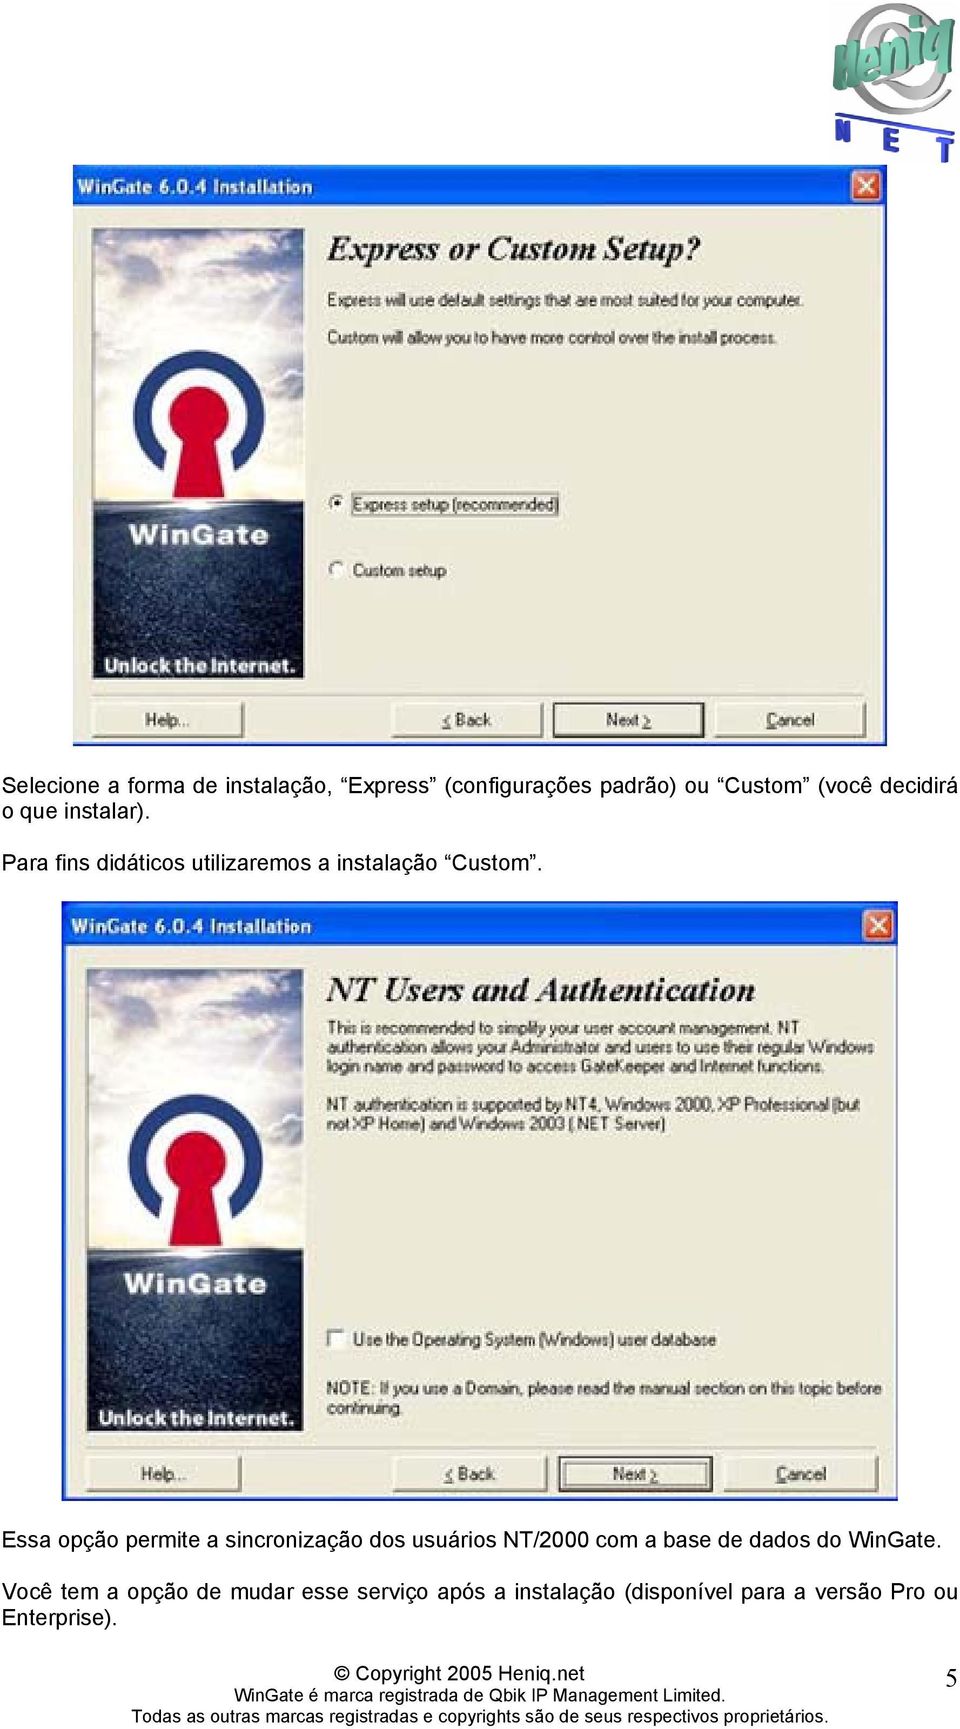 Essa opção permite a sincronização dos usuários NT/2000 com a base de dados do WinGate.